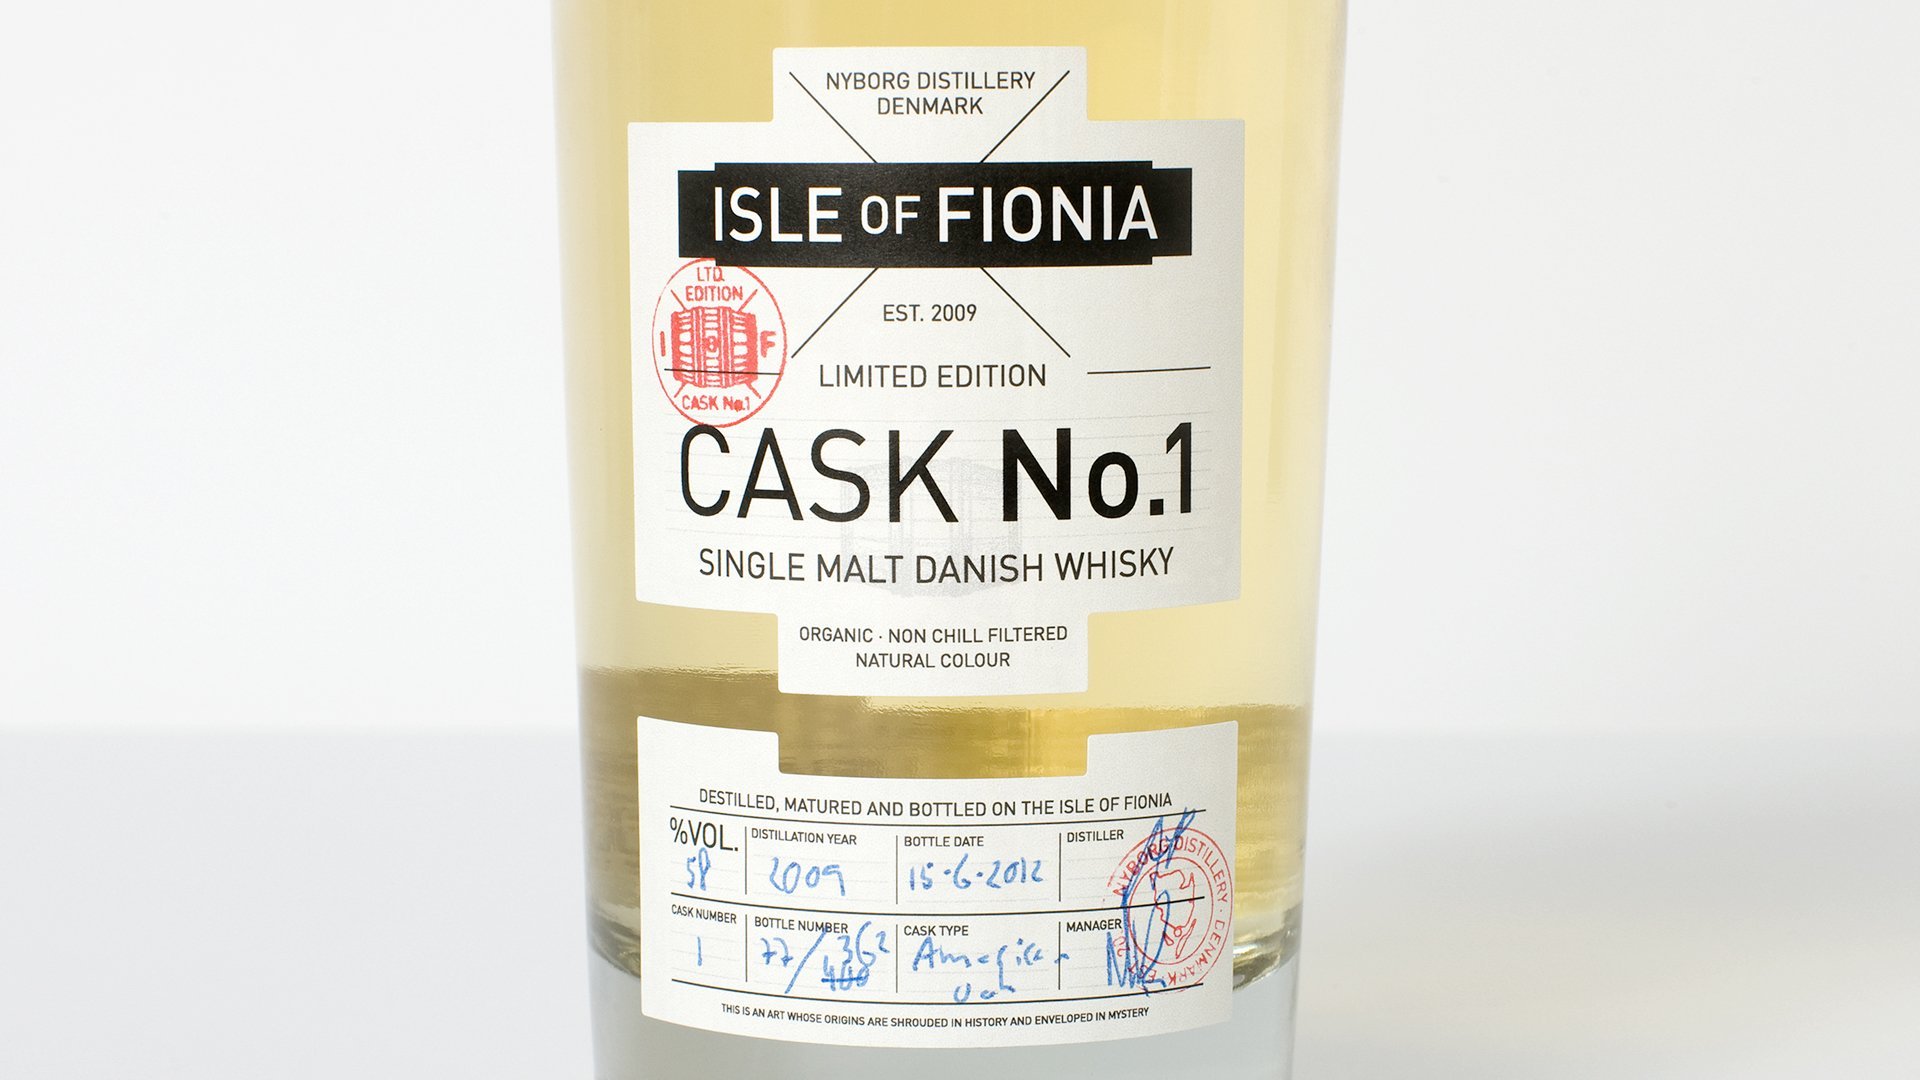 Isle of Fionia packaging design by LOOP Associates